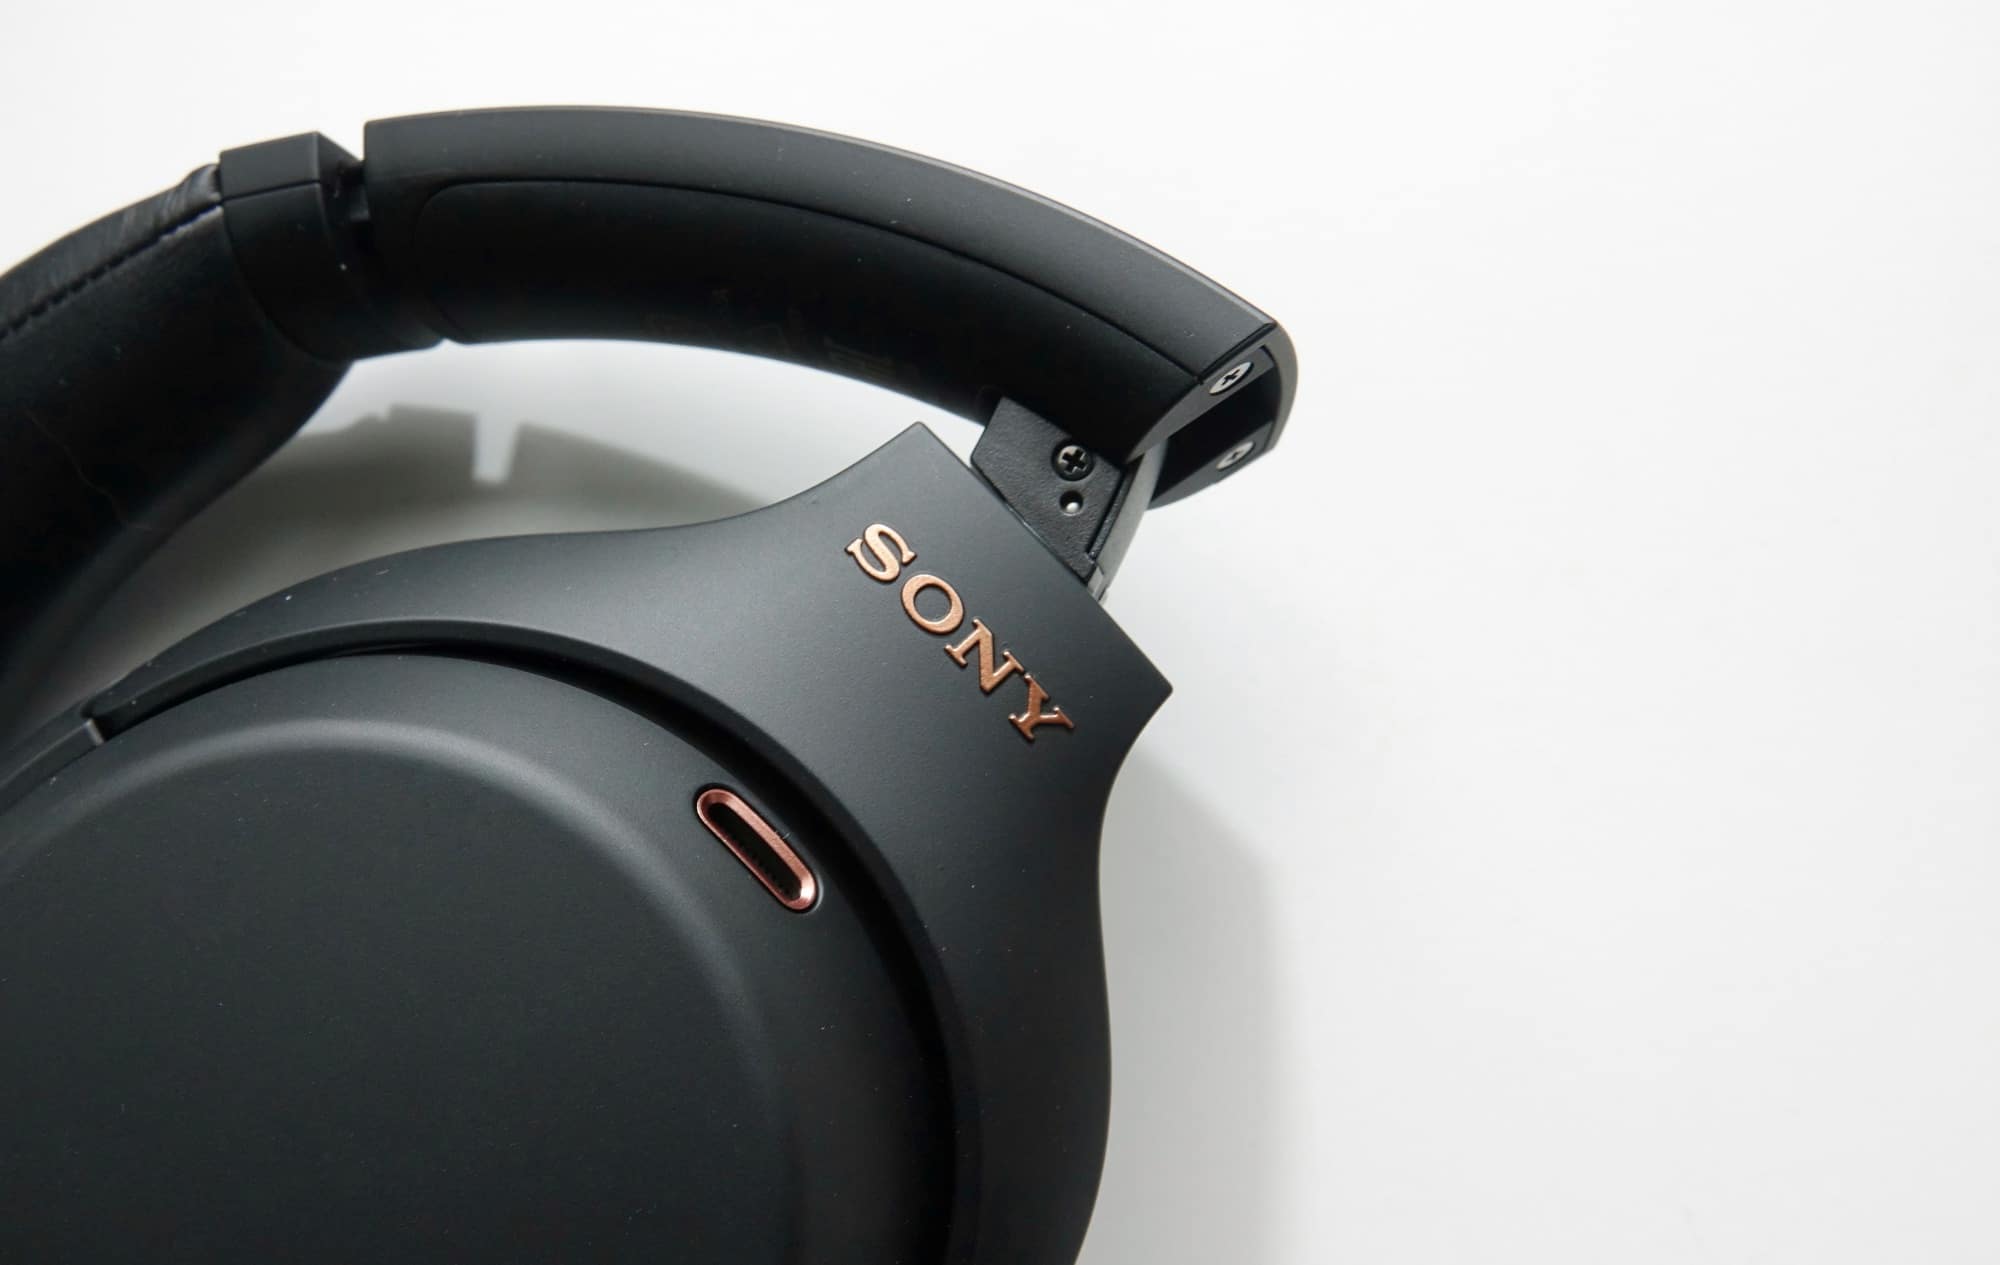 Sony xm4 earbuds